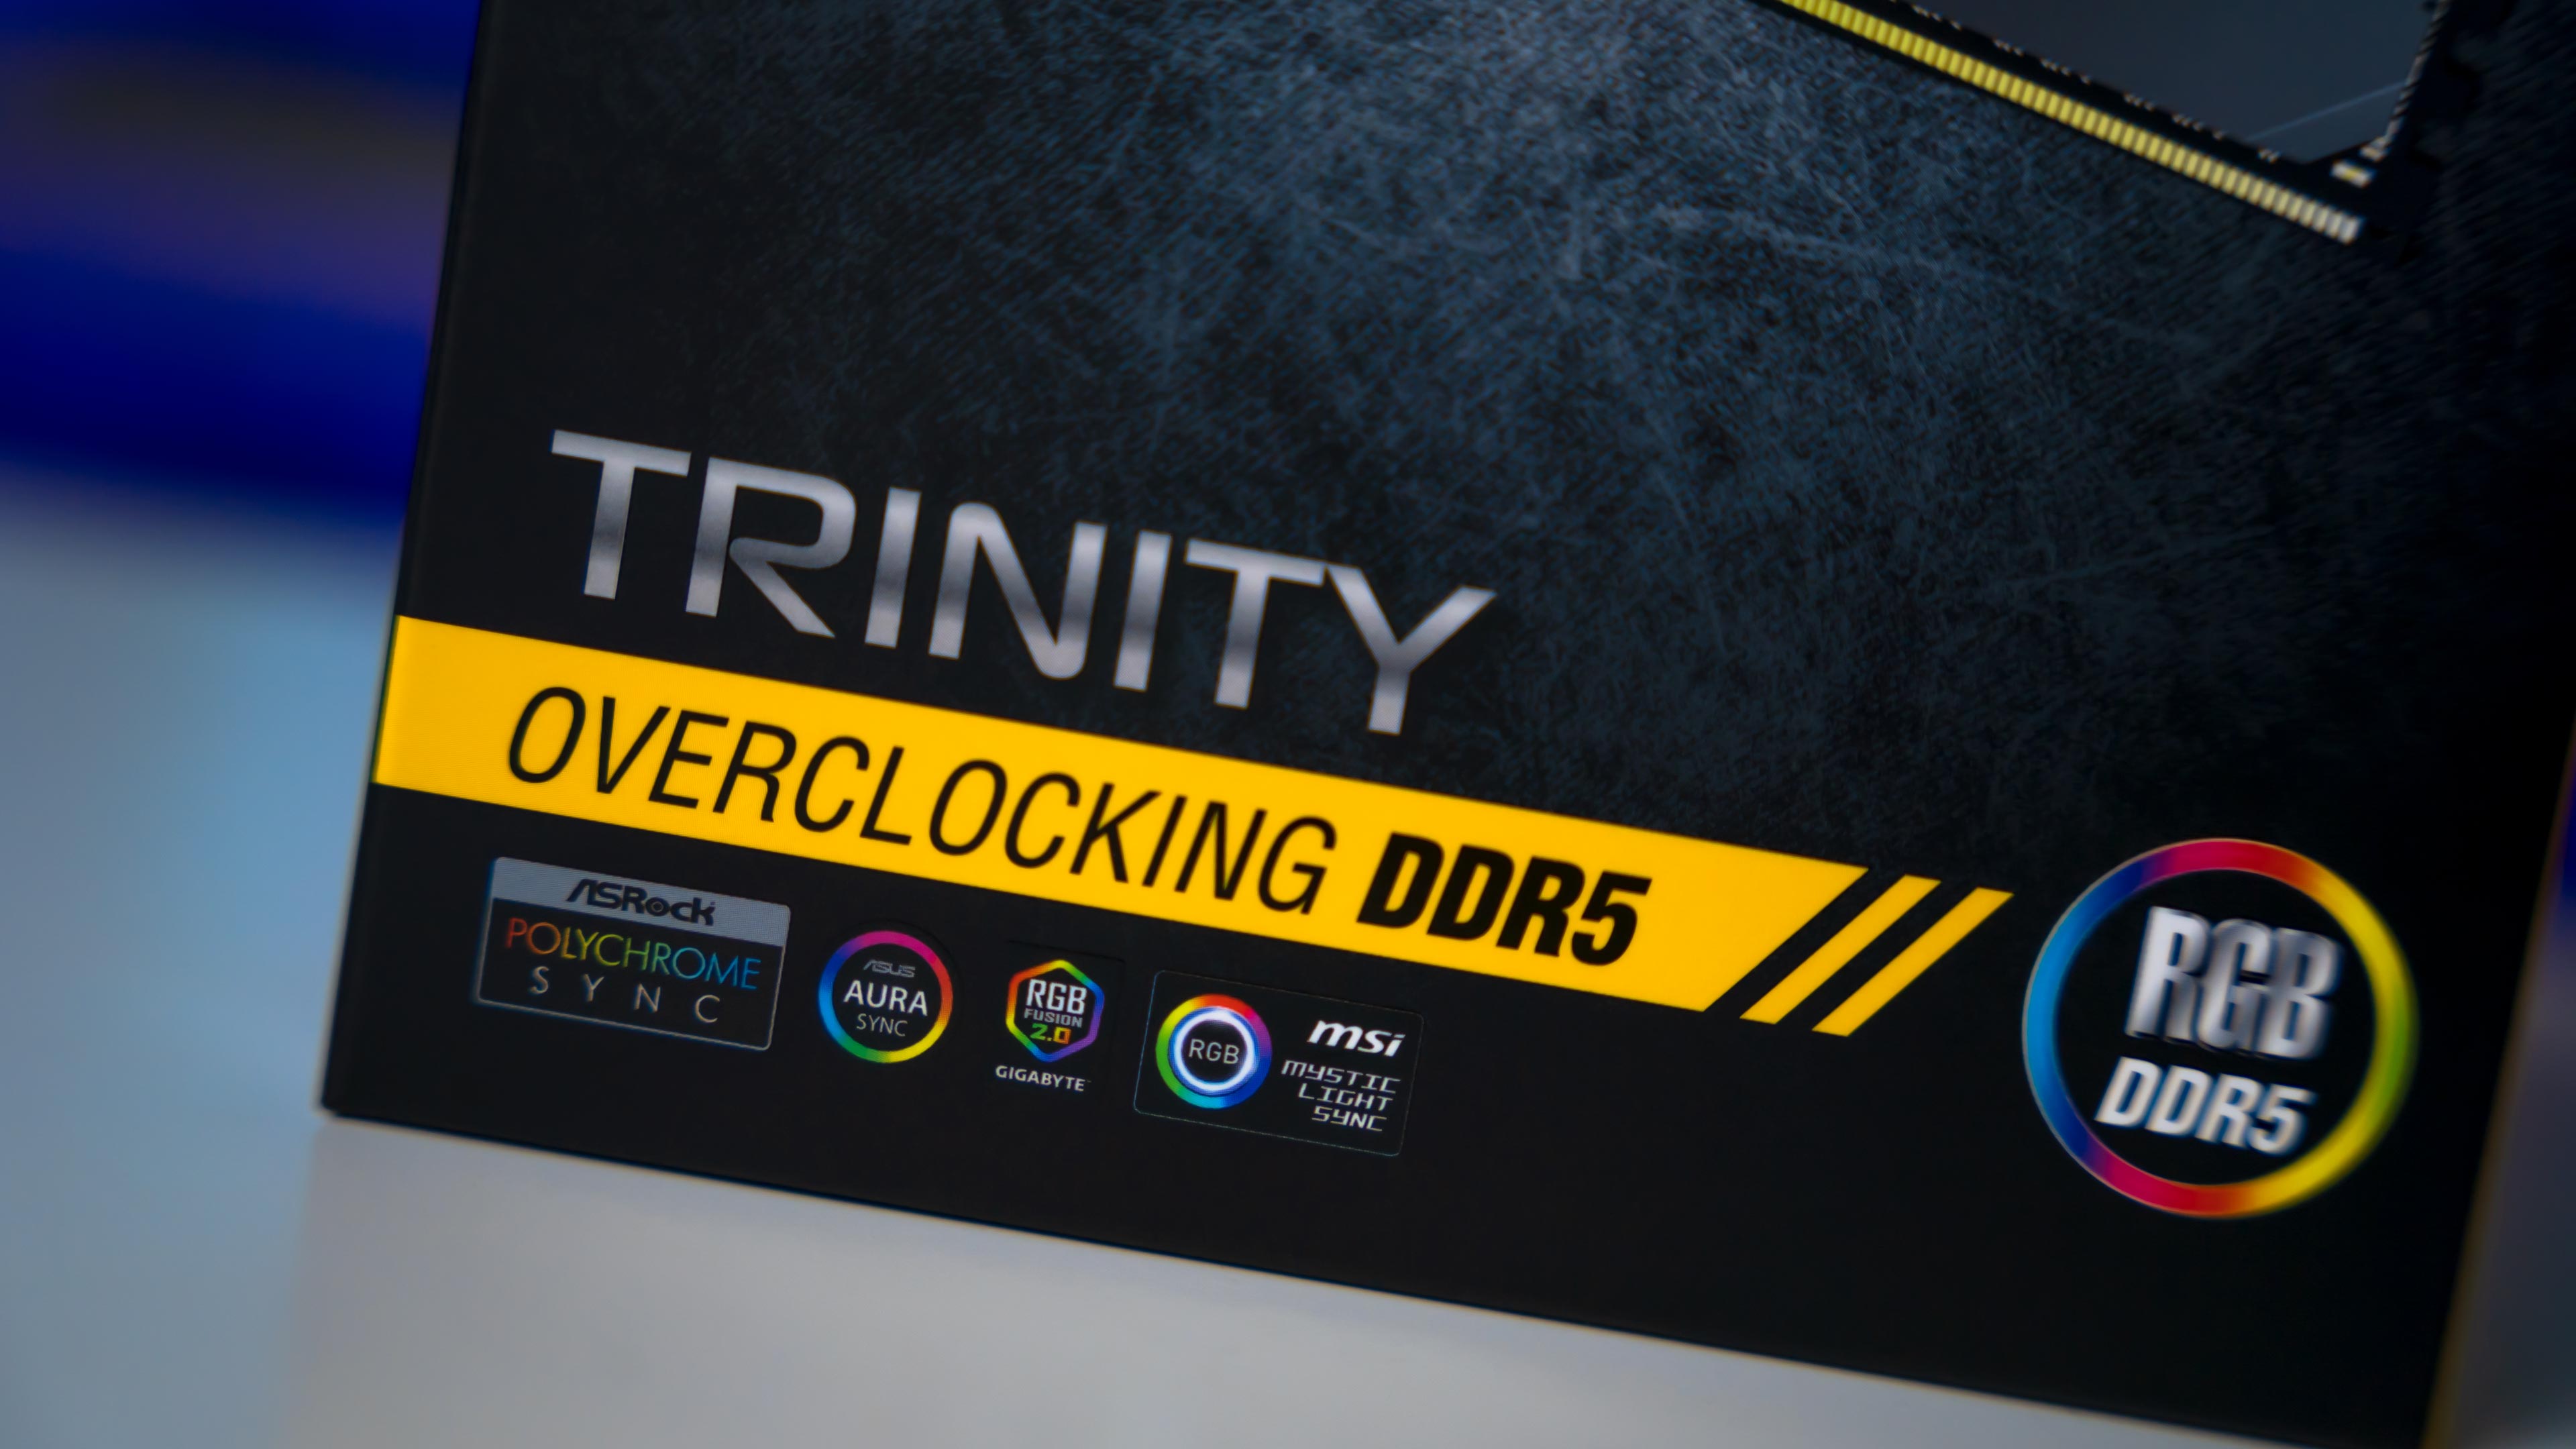 Neo Forza Trinity RGB DDR5 6400Mhz Box (2)